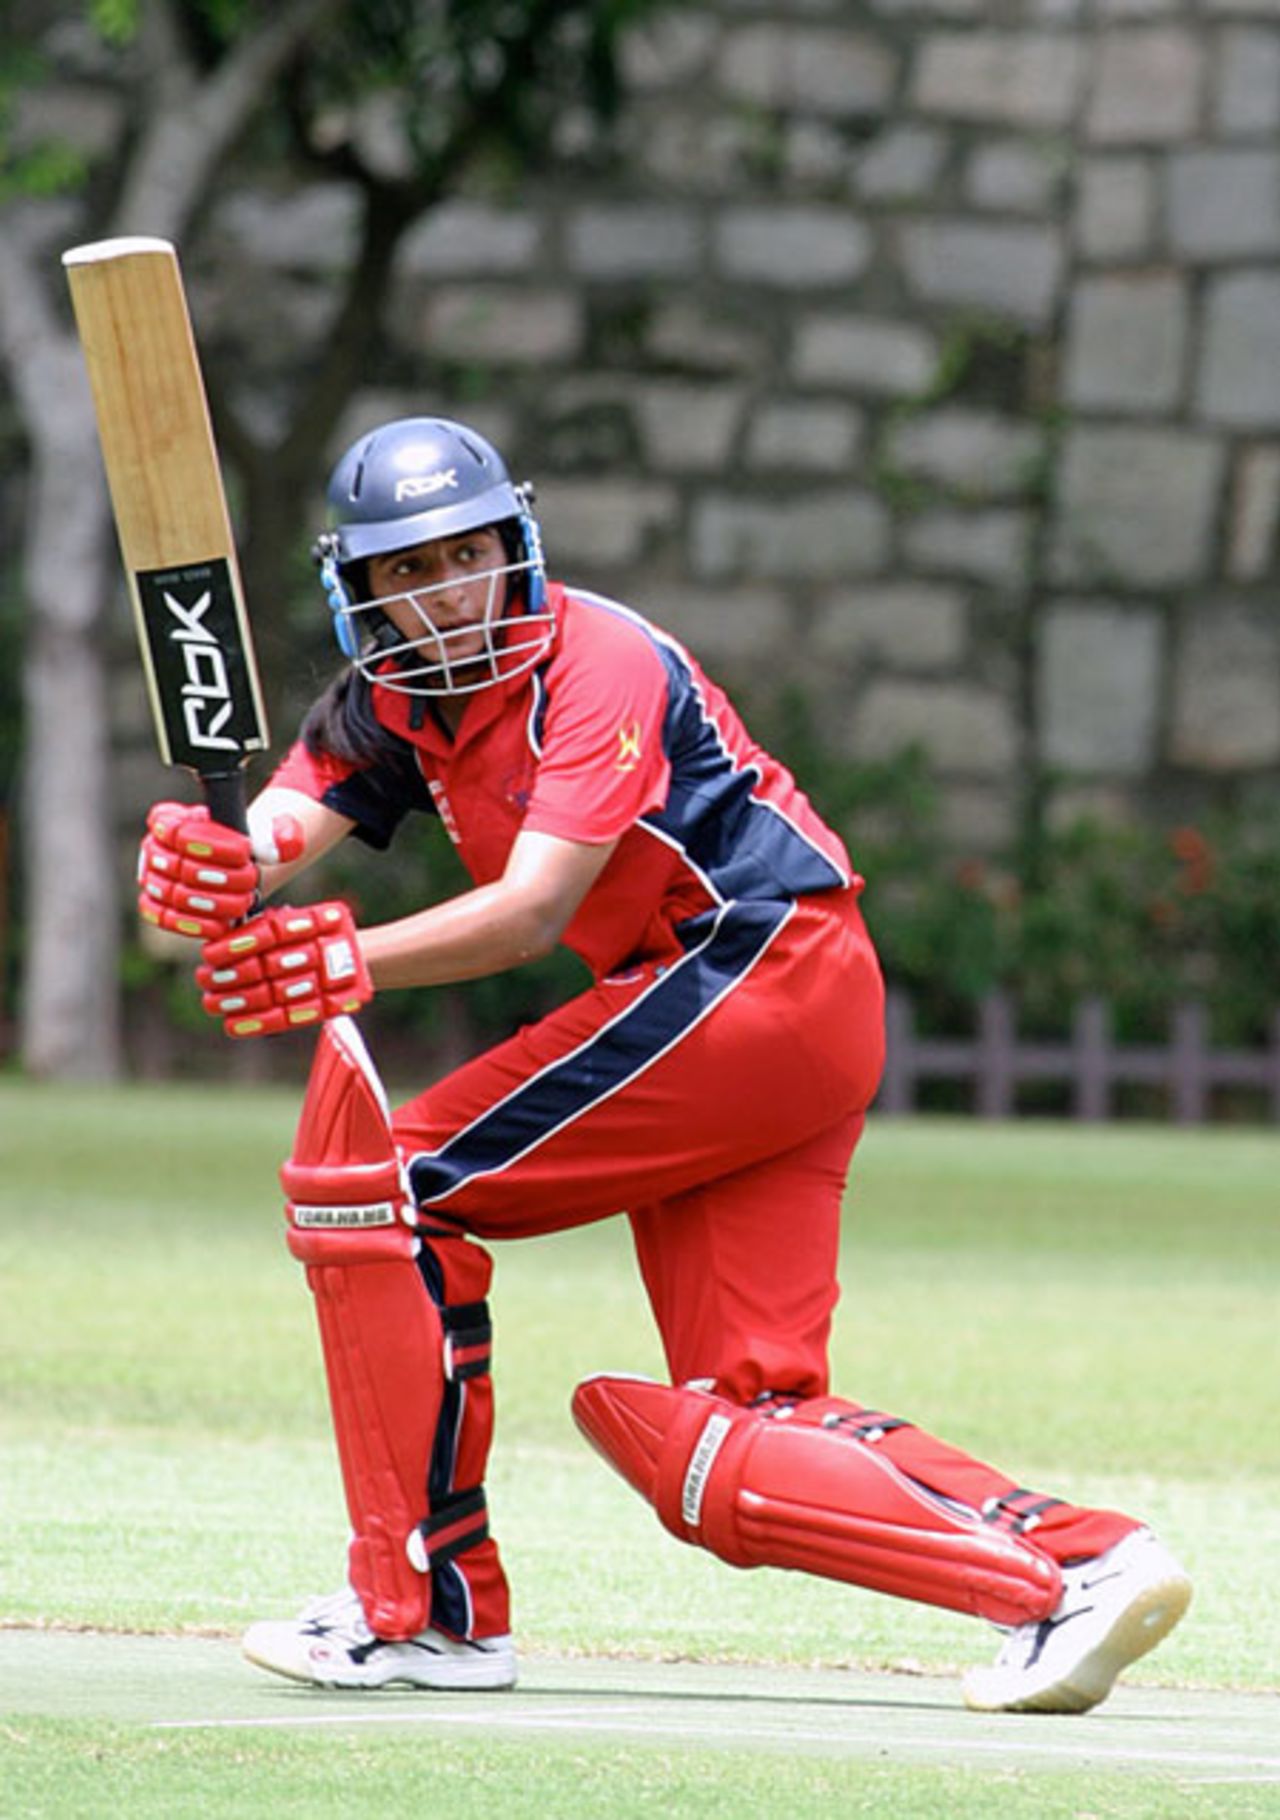 Keenu Gill batting for Hong Kong against China at Kowloon Cricket Club, 4th July 2007